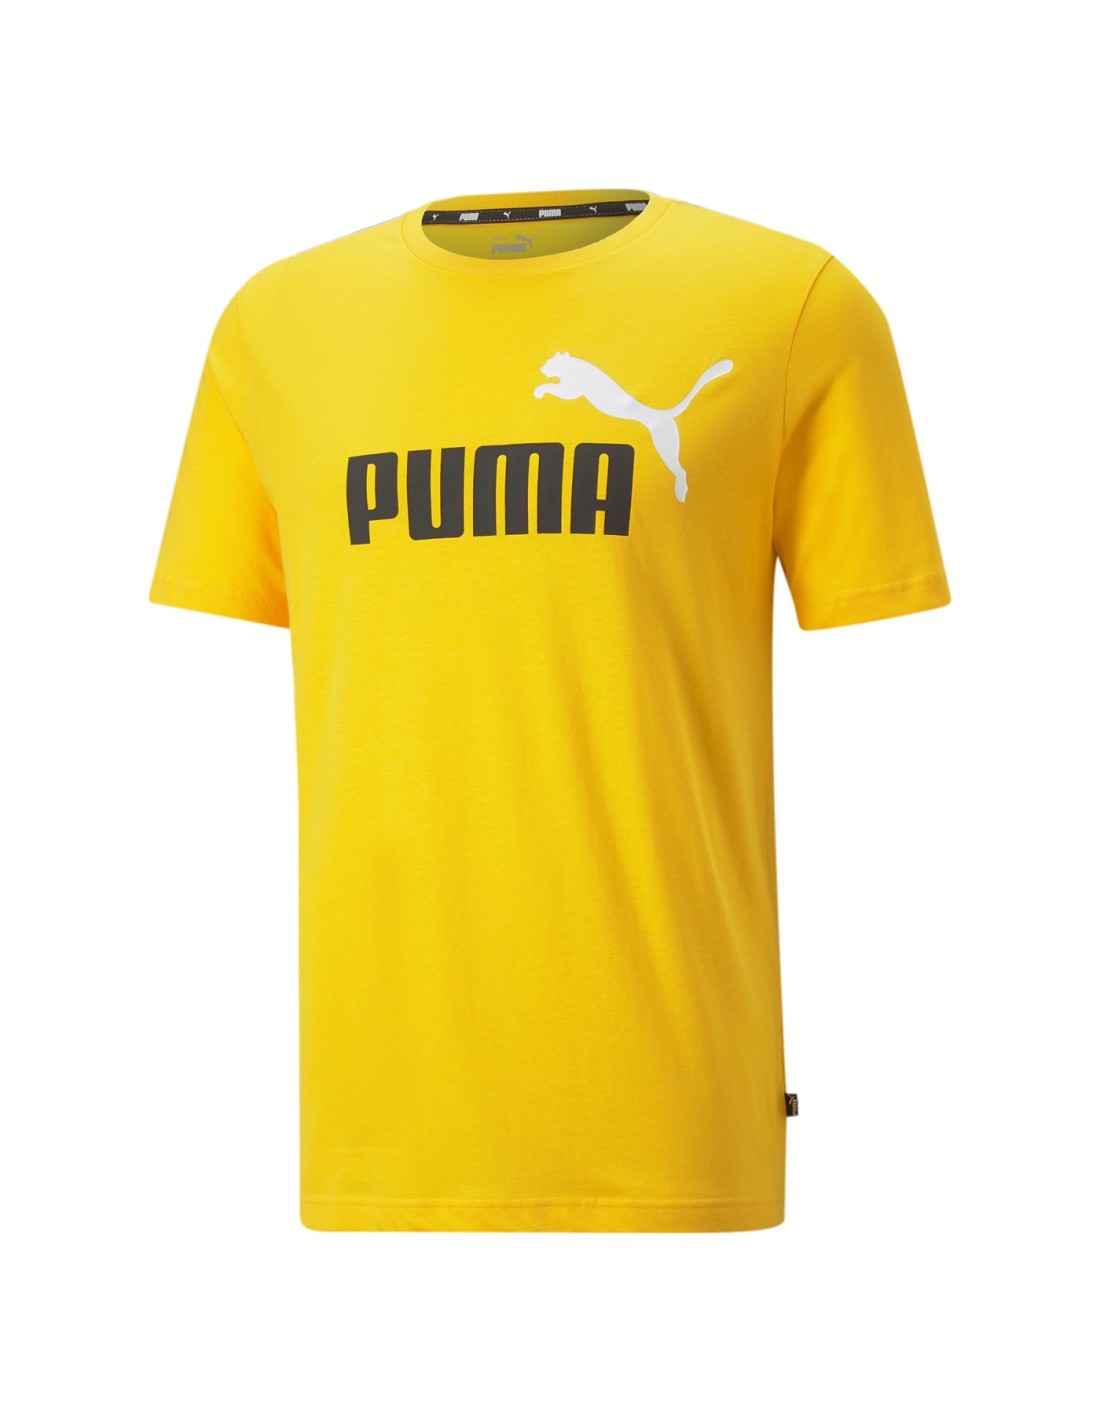 ESS+ 2 COL LOGO TEE Camiseta Puma hombre.